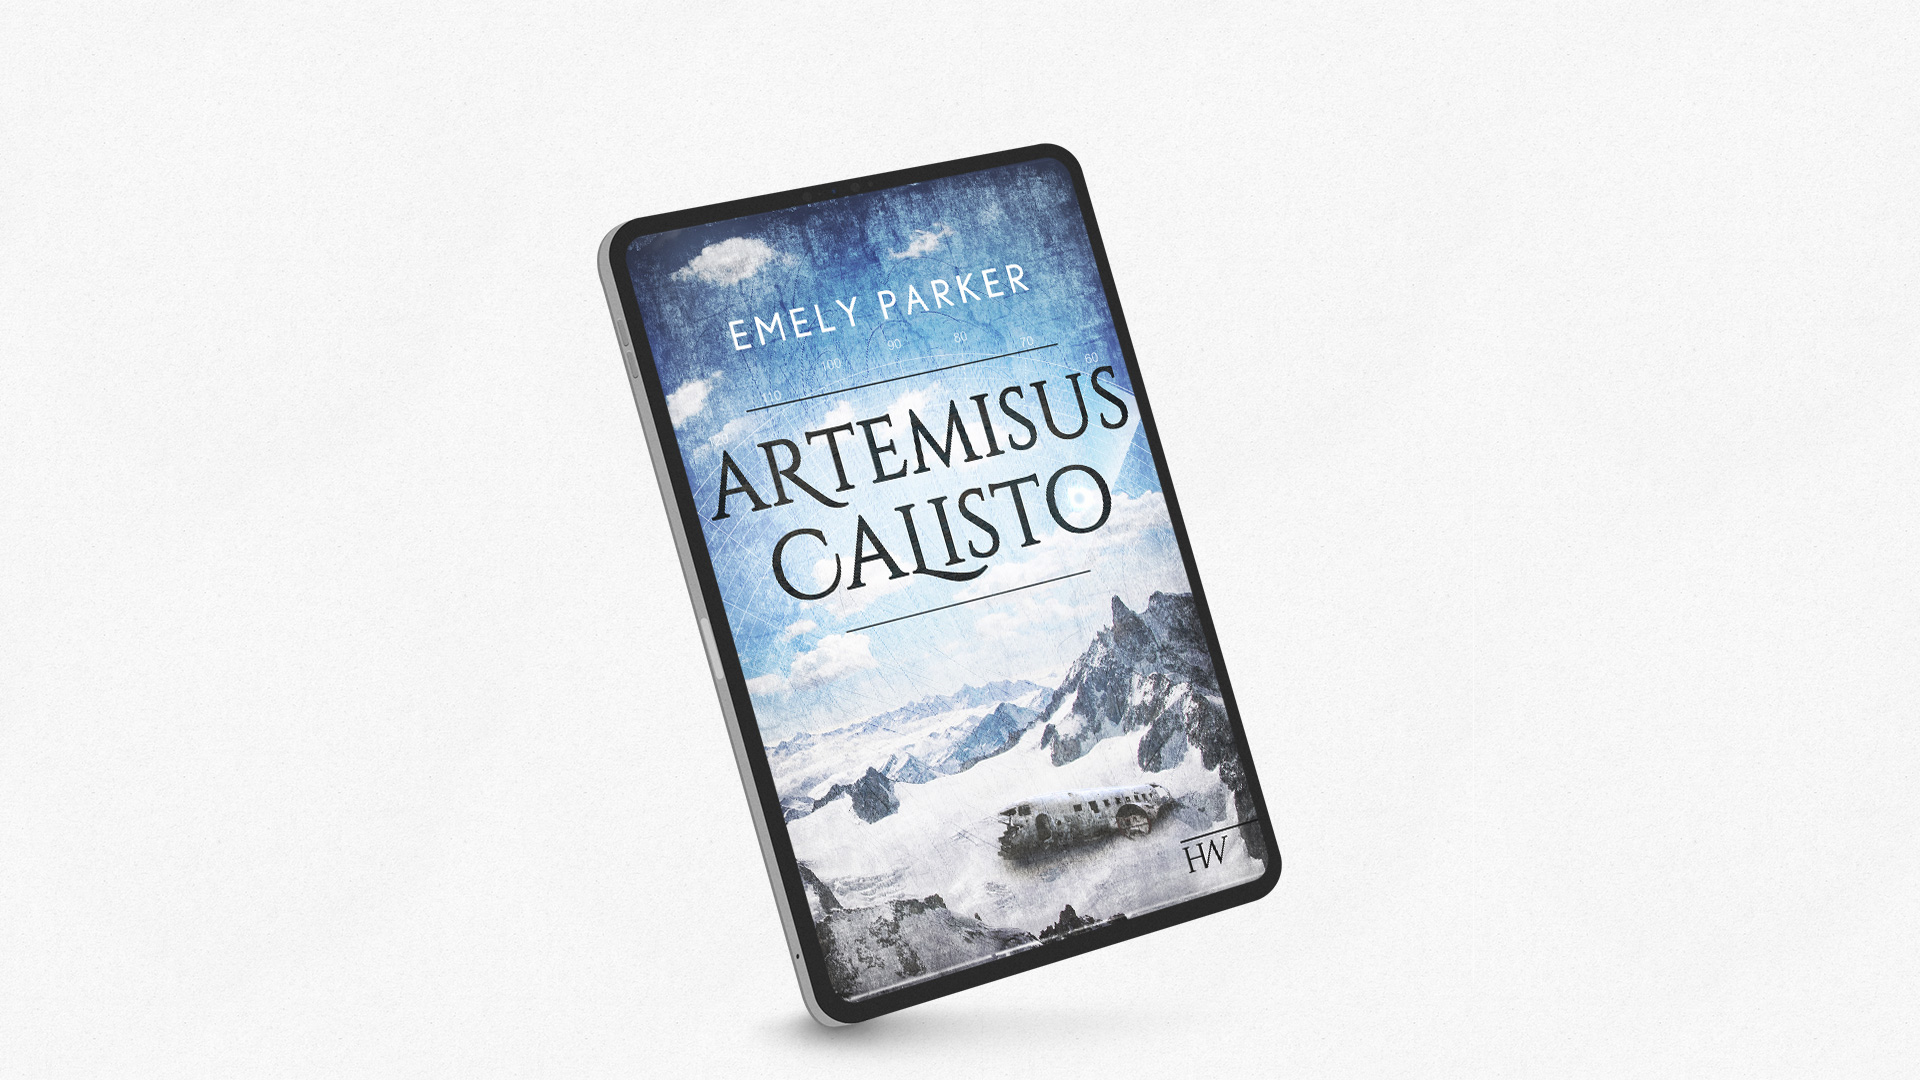 Artemisus Calisto